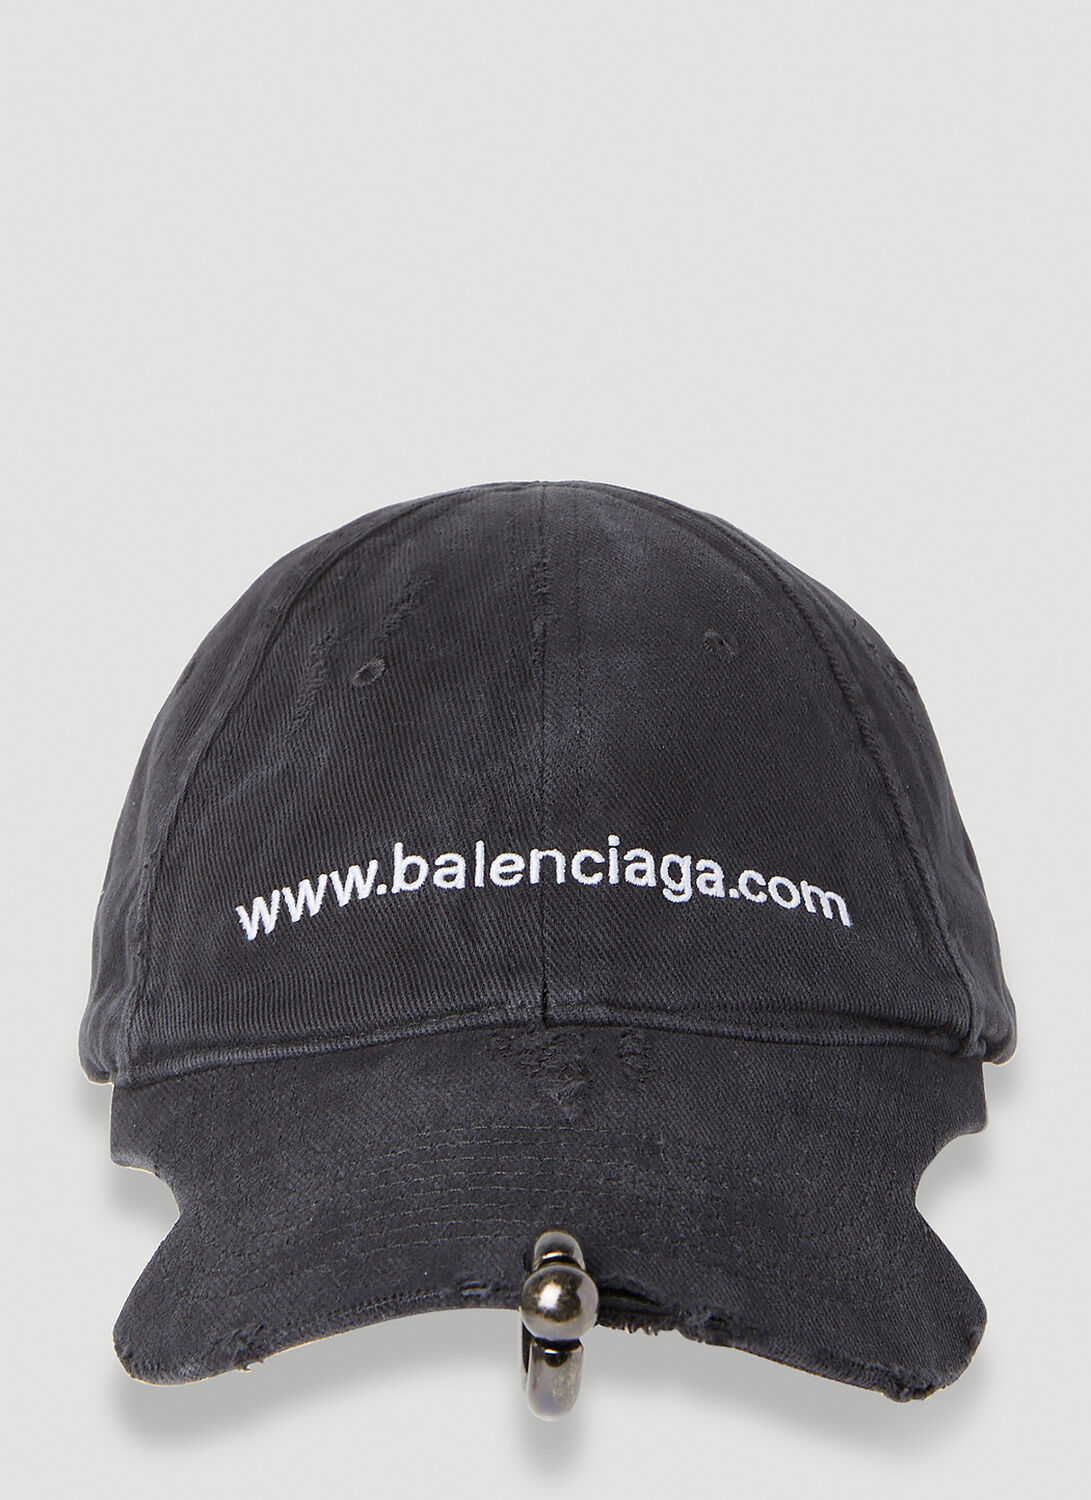 BALENCIAGA PIERCED WEBSITE BASEBALL CAP